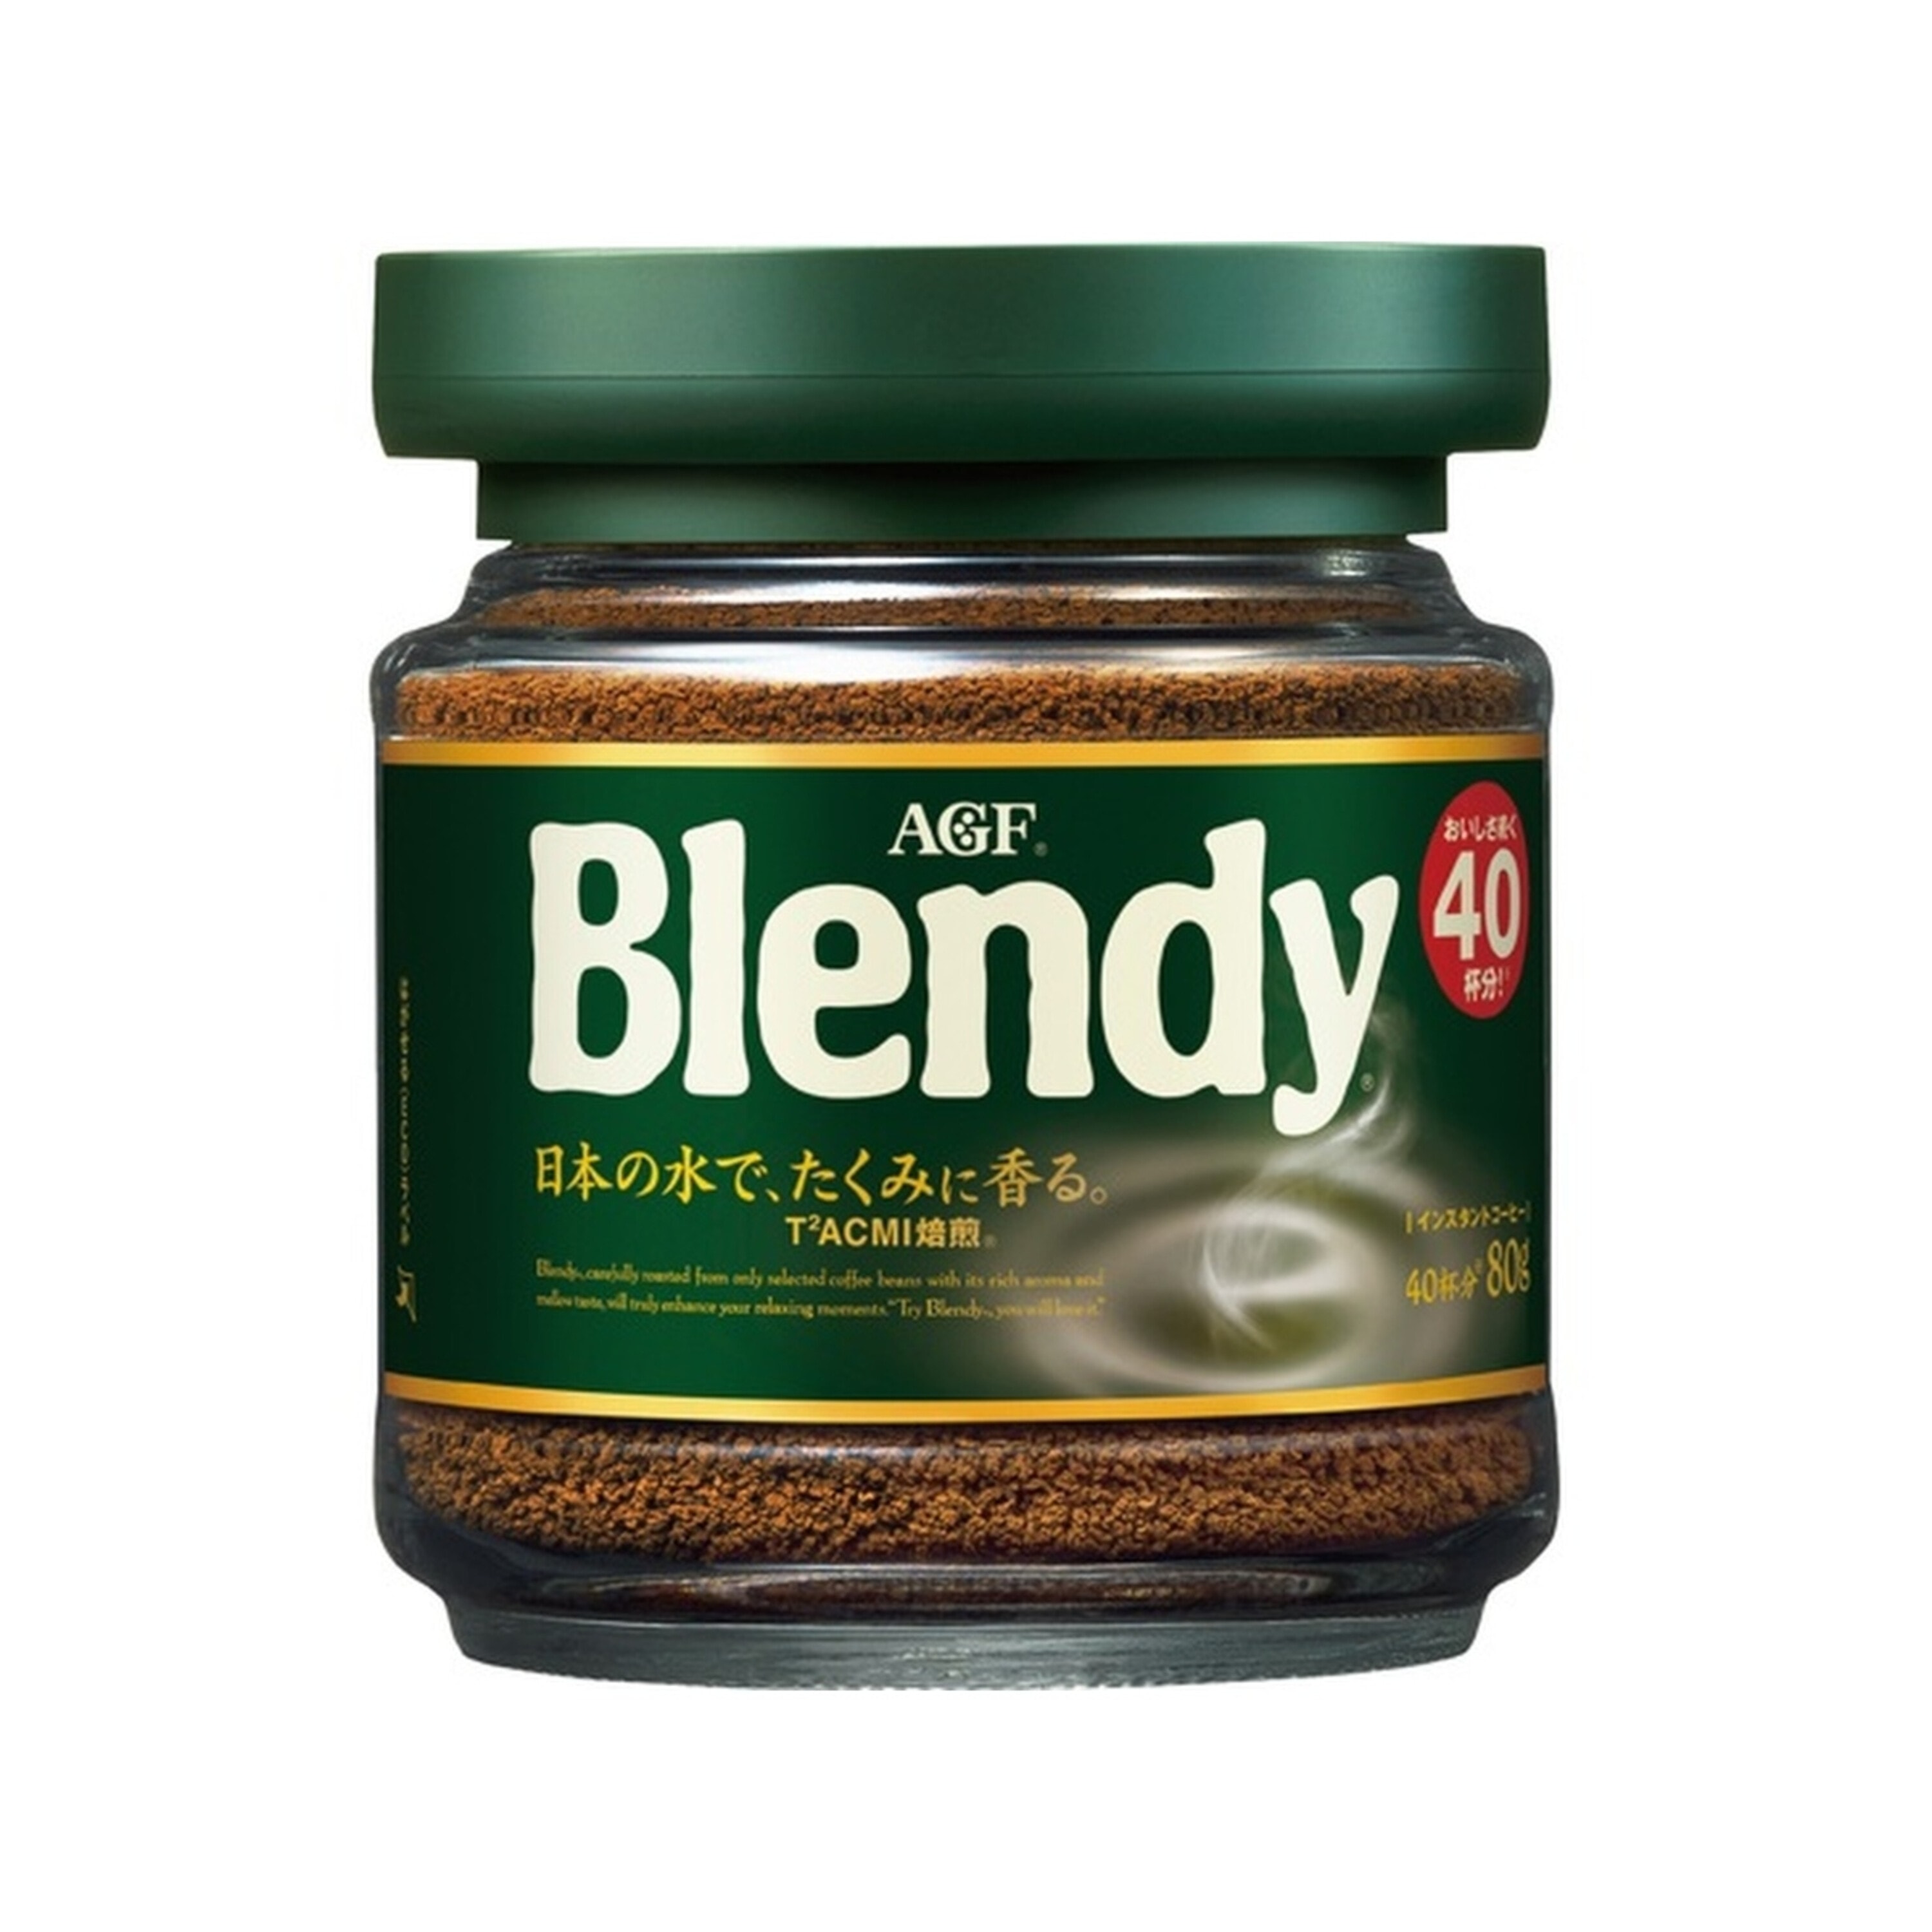 Вода кофе растворимый. Кофе AGF Blendy растворимый. AGF бленди кофе растворимый, с/б, 80 гр. Японский кофе AGF. Японский кофе Blendy.